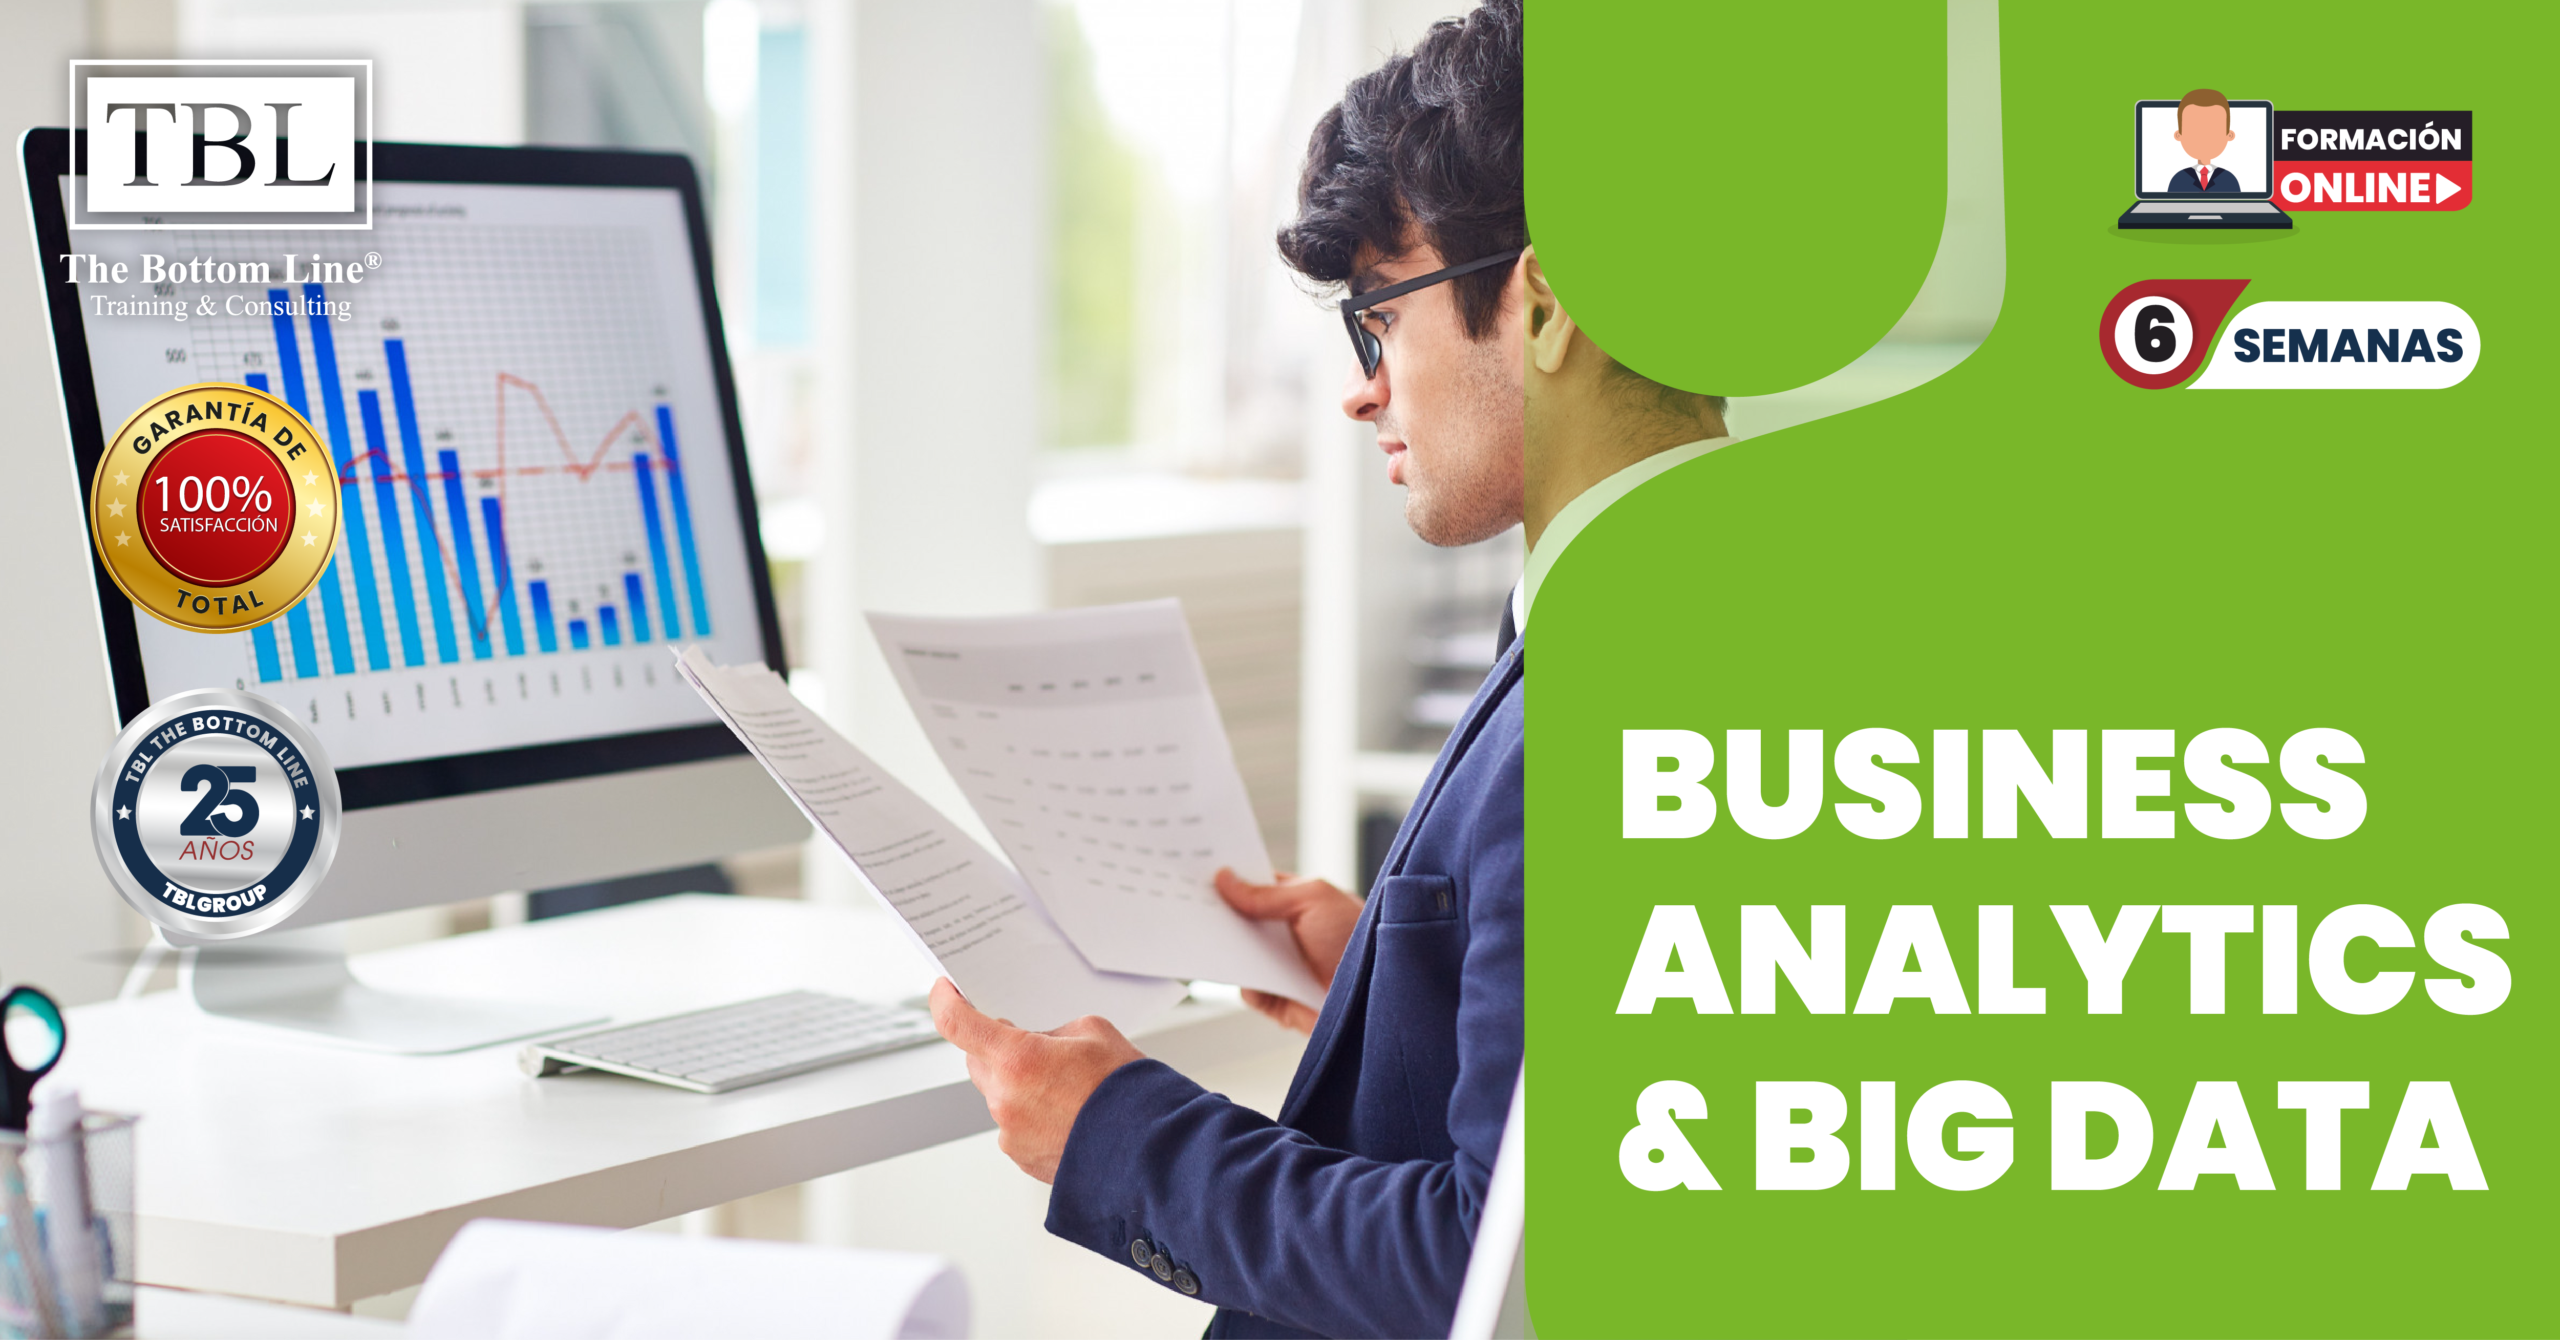 Business Analytics & Big Data